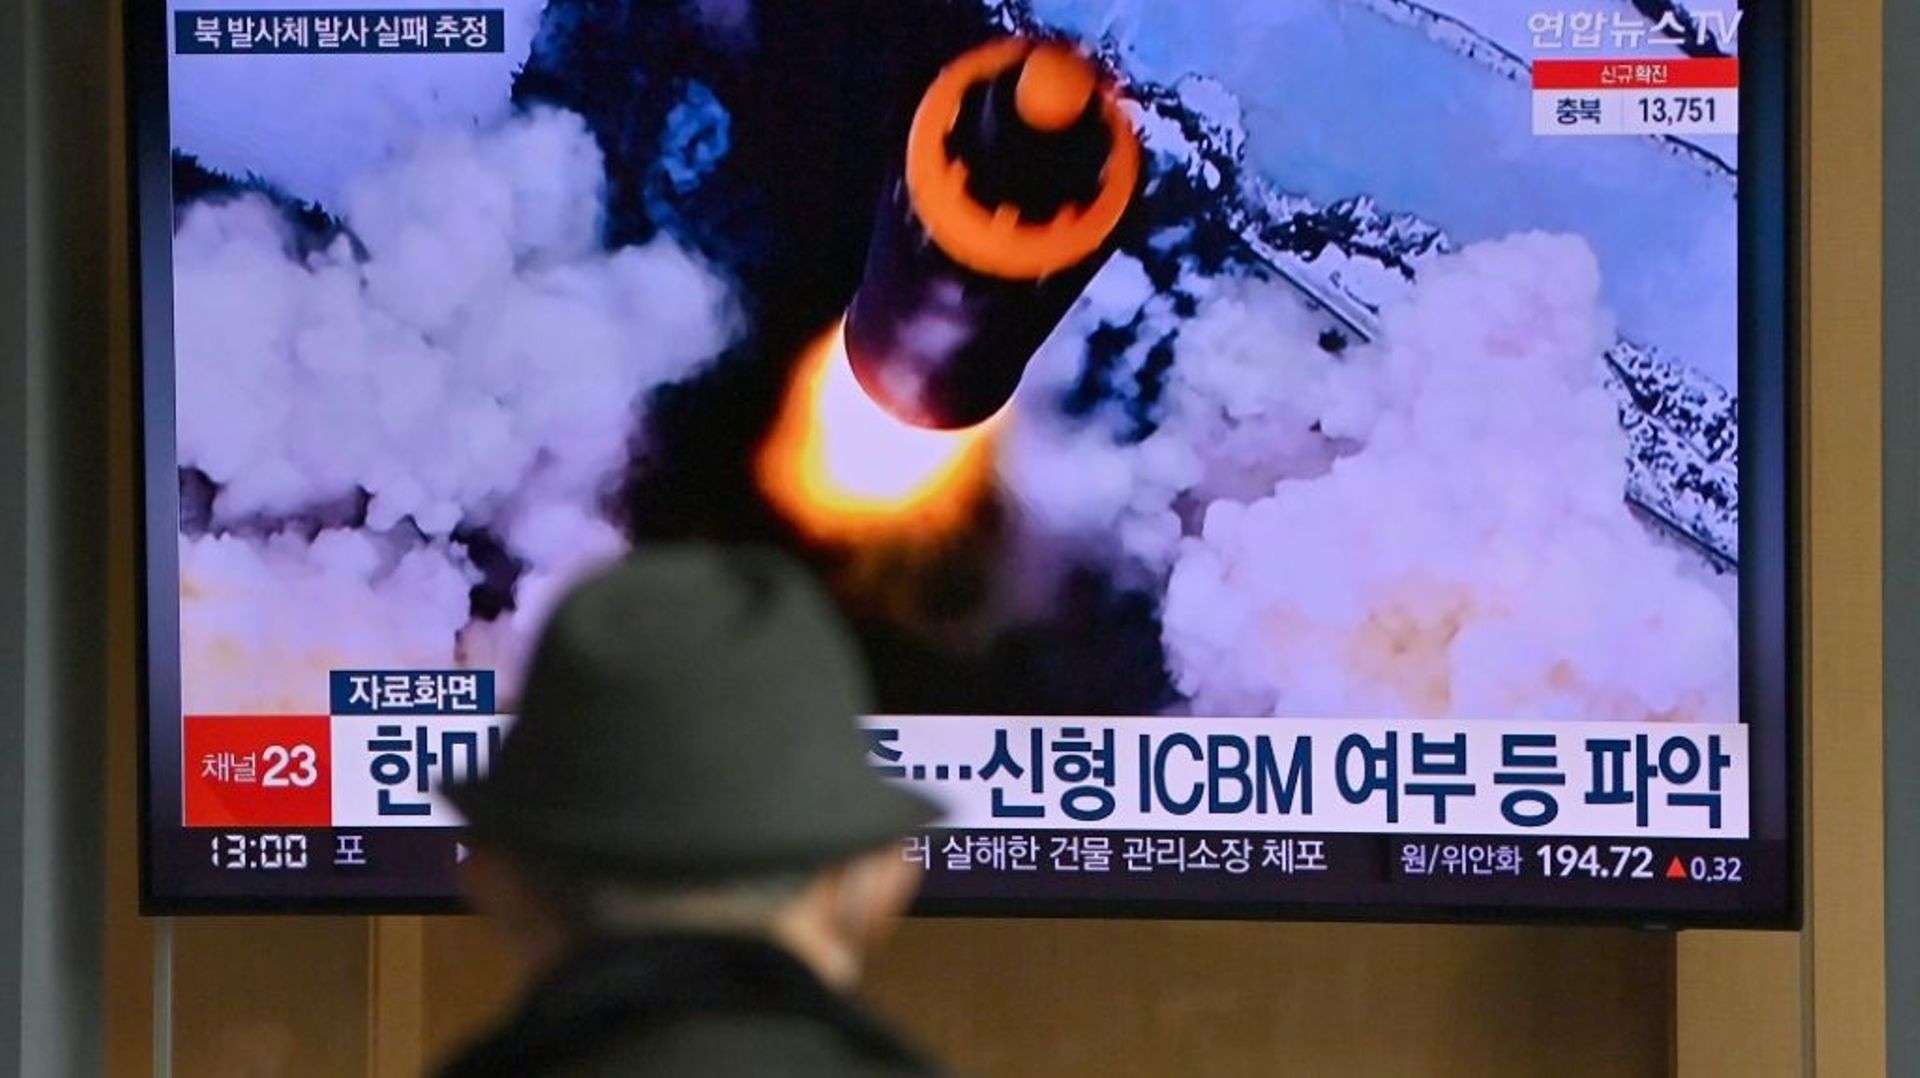 Des images d’un tir de "projectile non identifié" par la Corée du Nord diffusées sur un écran d’une gare de Séoul, le 16 mars 2022 en Corée du Sud